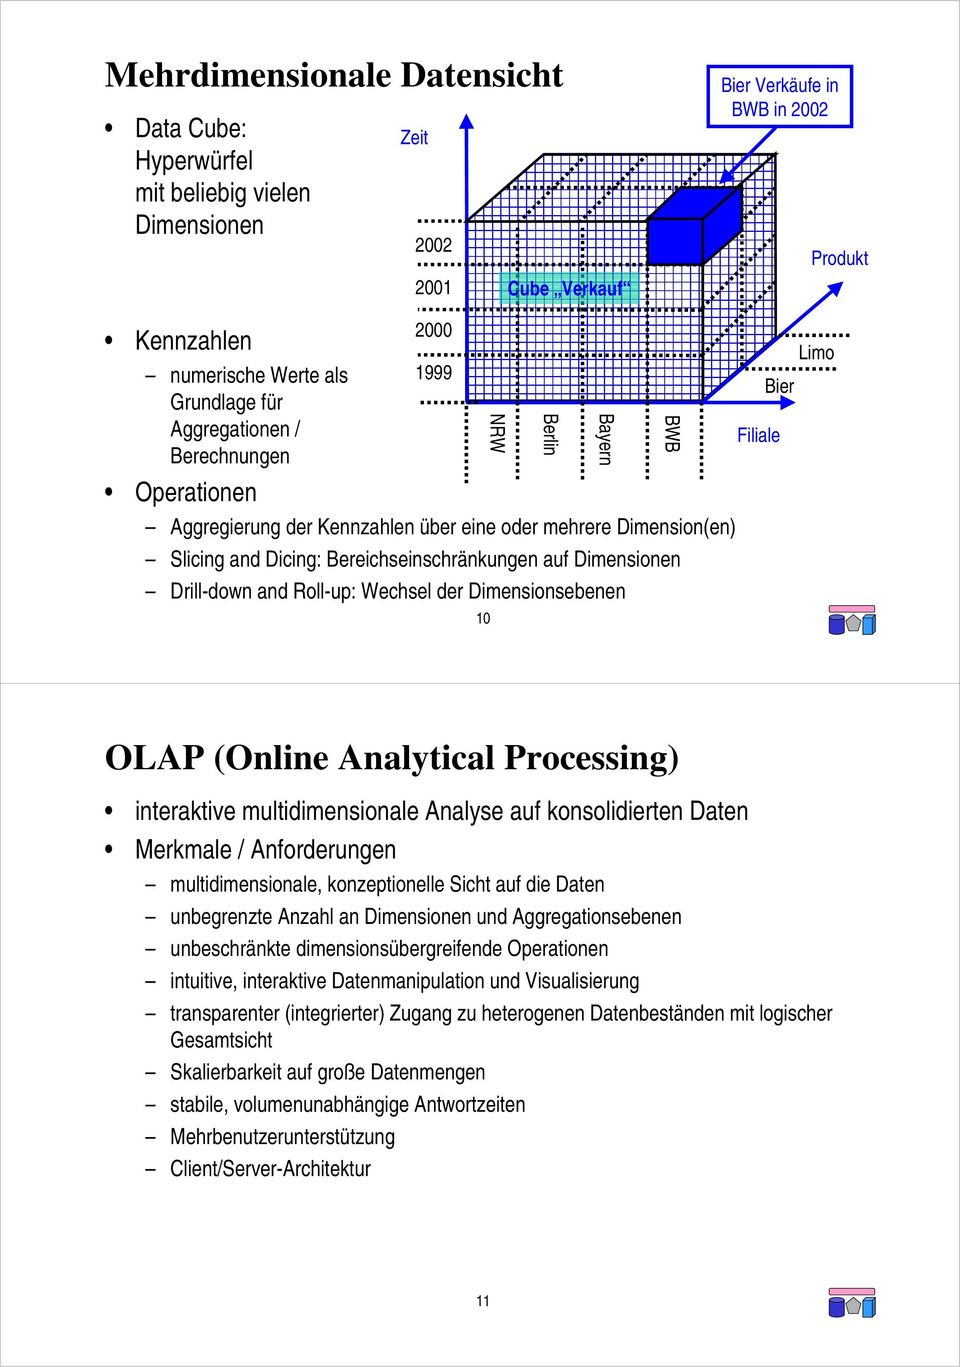 Wechsel der Dimensionsebenen 10 NRW Berlin Bayern BWB Filiale Limo Bier OLAP (Online Analytical Processing) interaktive multidimensionale Analyse auf konsolidierten Daten Merkmale / Anforderungen